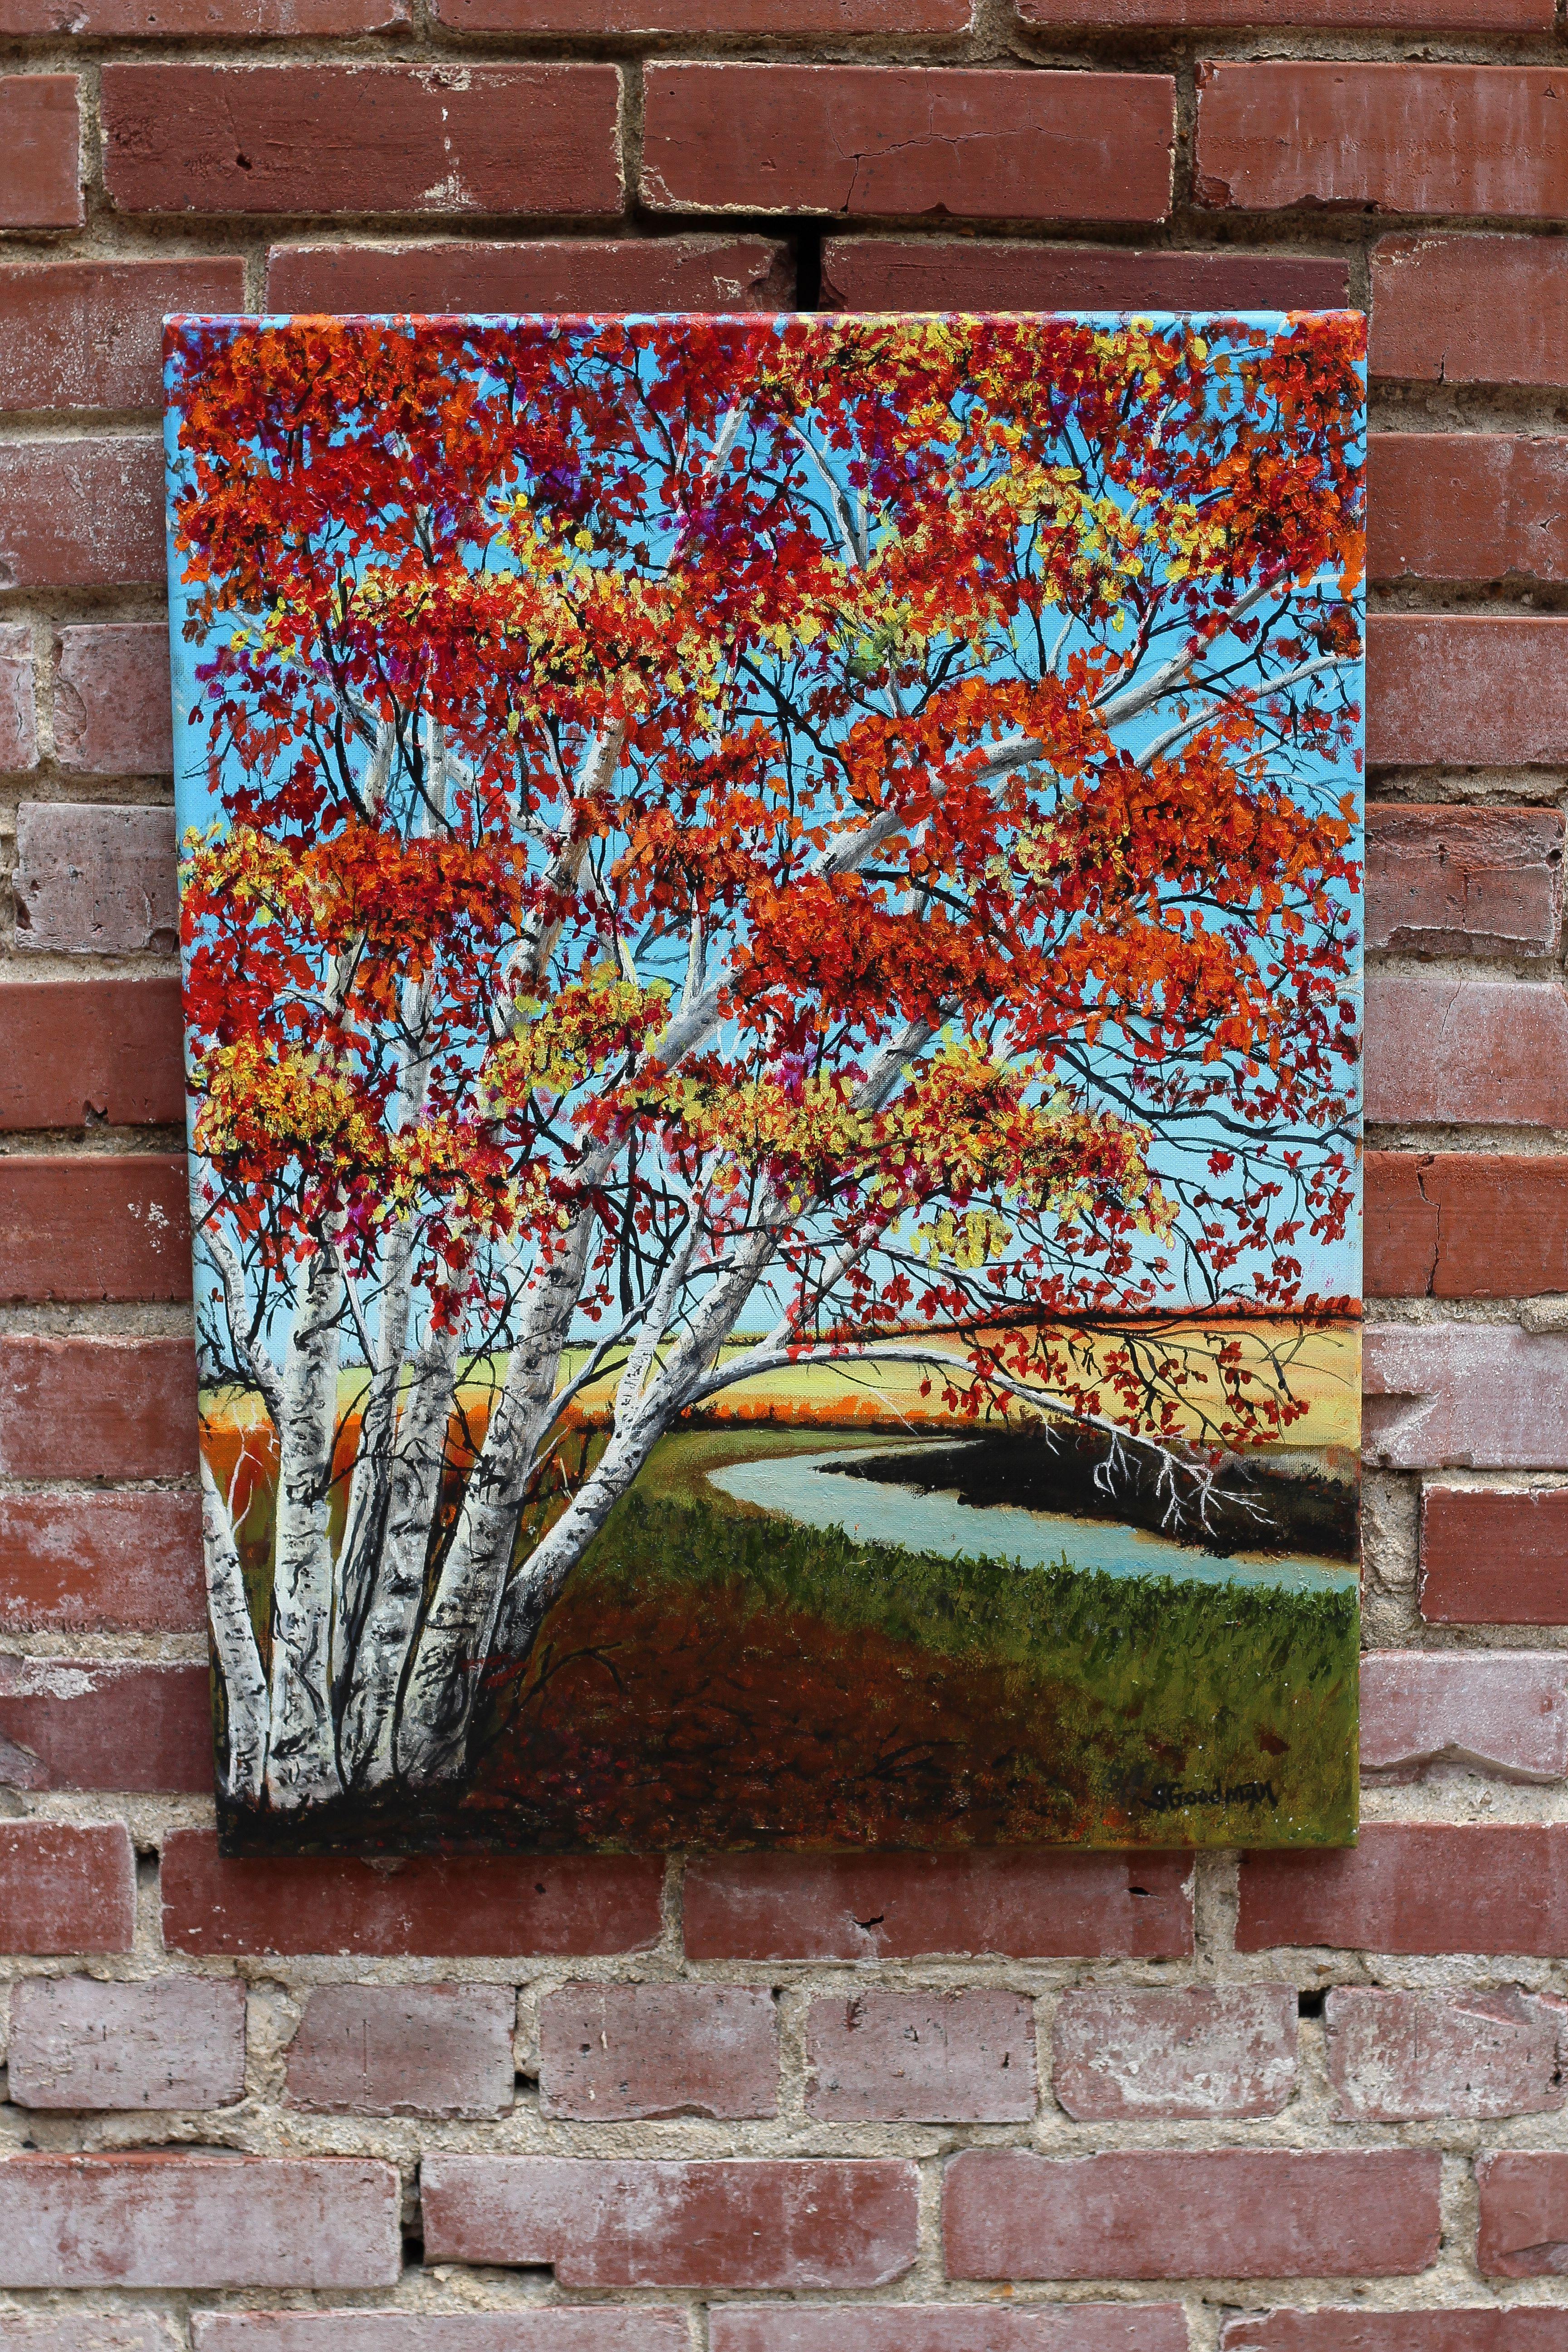 <p>Kommentare der Künstlerin<br>Die Künstlerin Shela Goodman präsentiert eine Birke am Straßenrand, die in den Farben des Herbstes erstrahlt. 